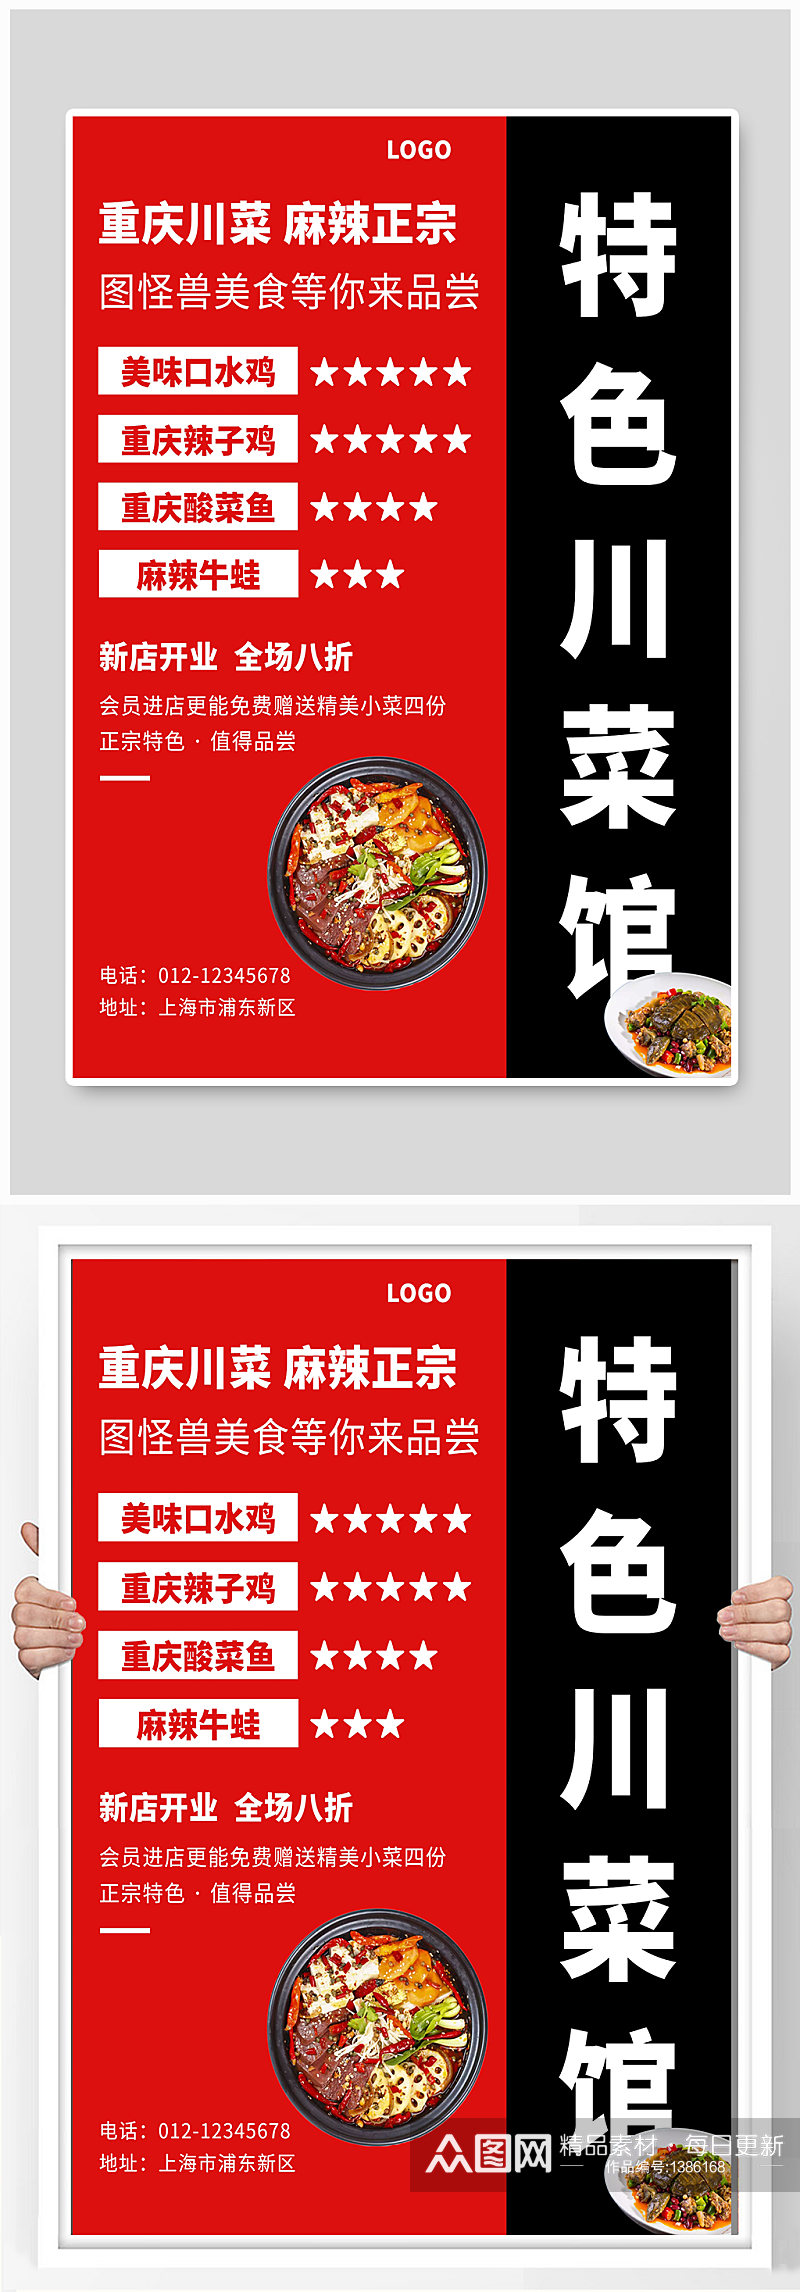 特色川菜馆宣传海报设计素材